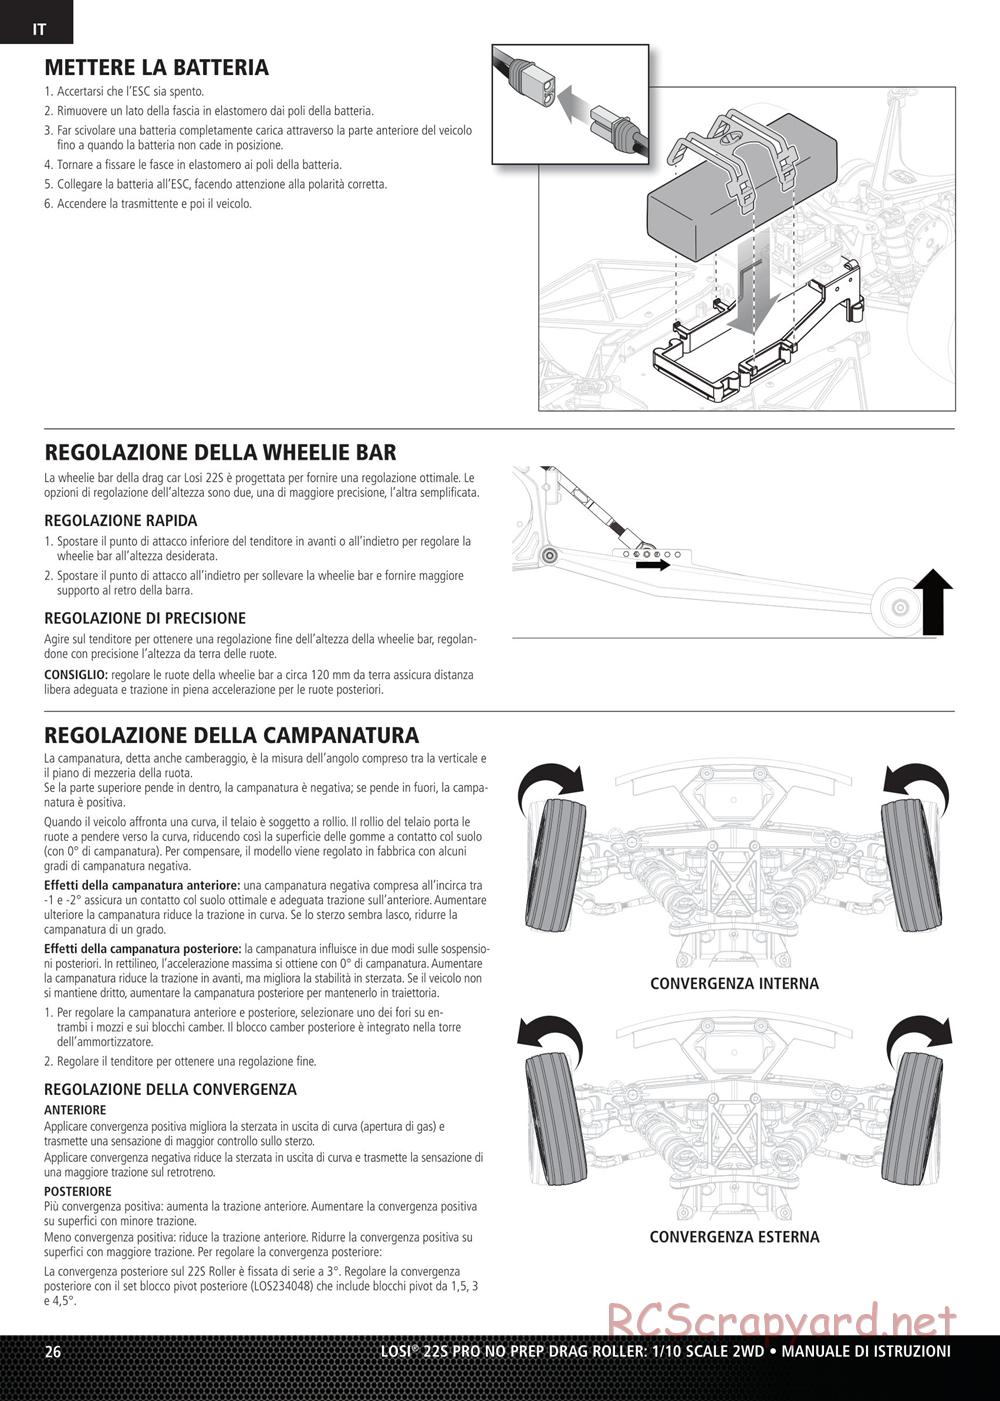 Team Losi - No Prep Drag Roller - Manual - Page 26